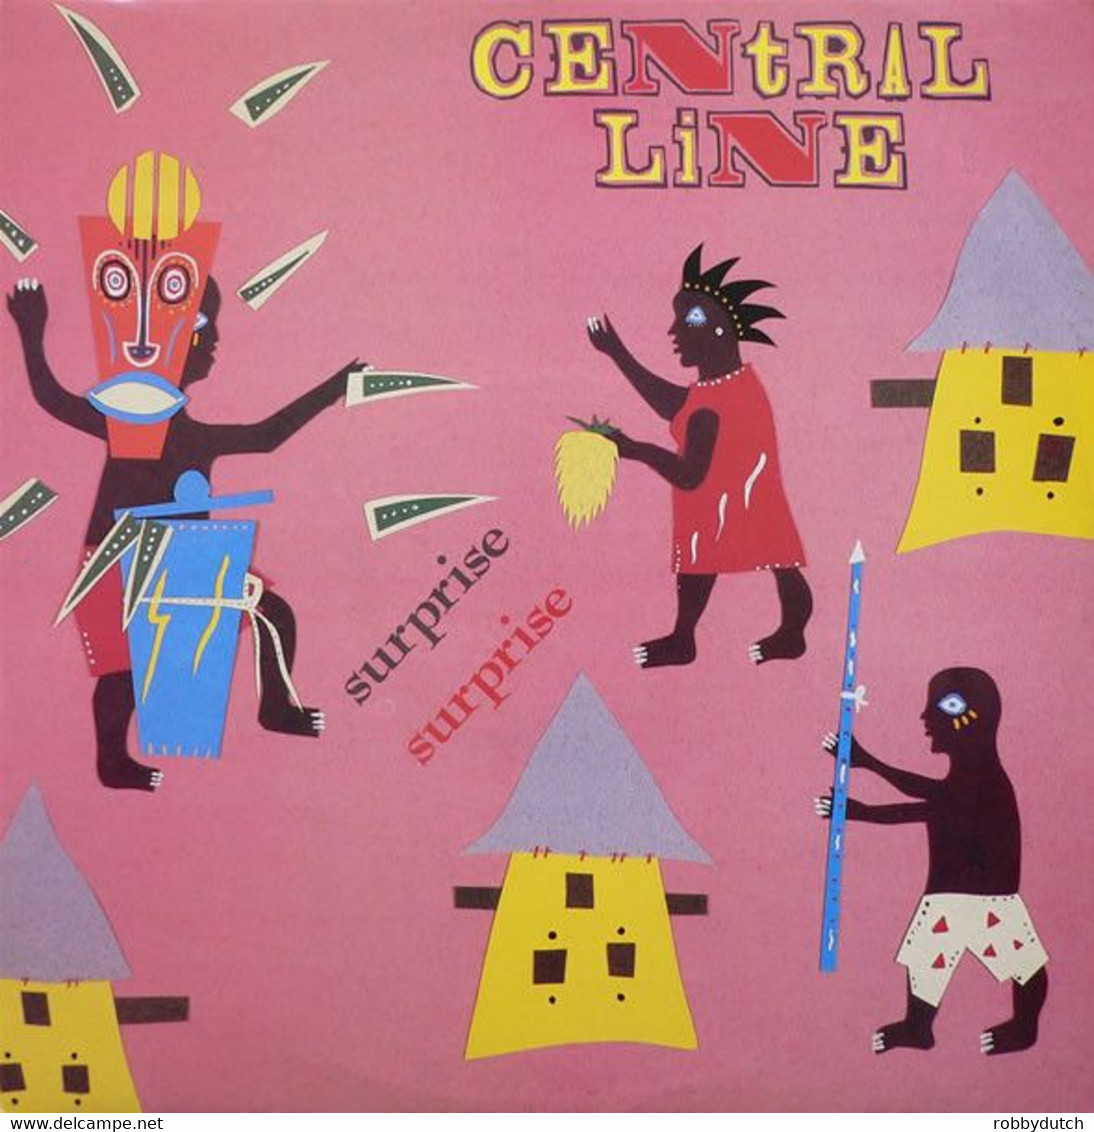 * 12" * CENTRAL LINE - SURPRISE SURPRISE (1983 Ex-!!!) - 45 Rpm - Maxi-Single